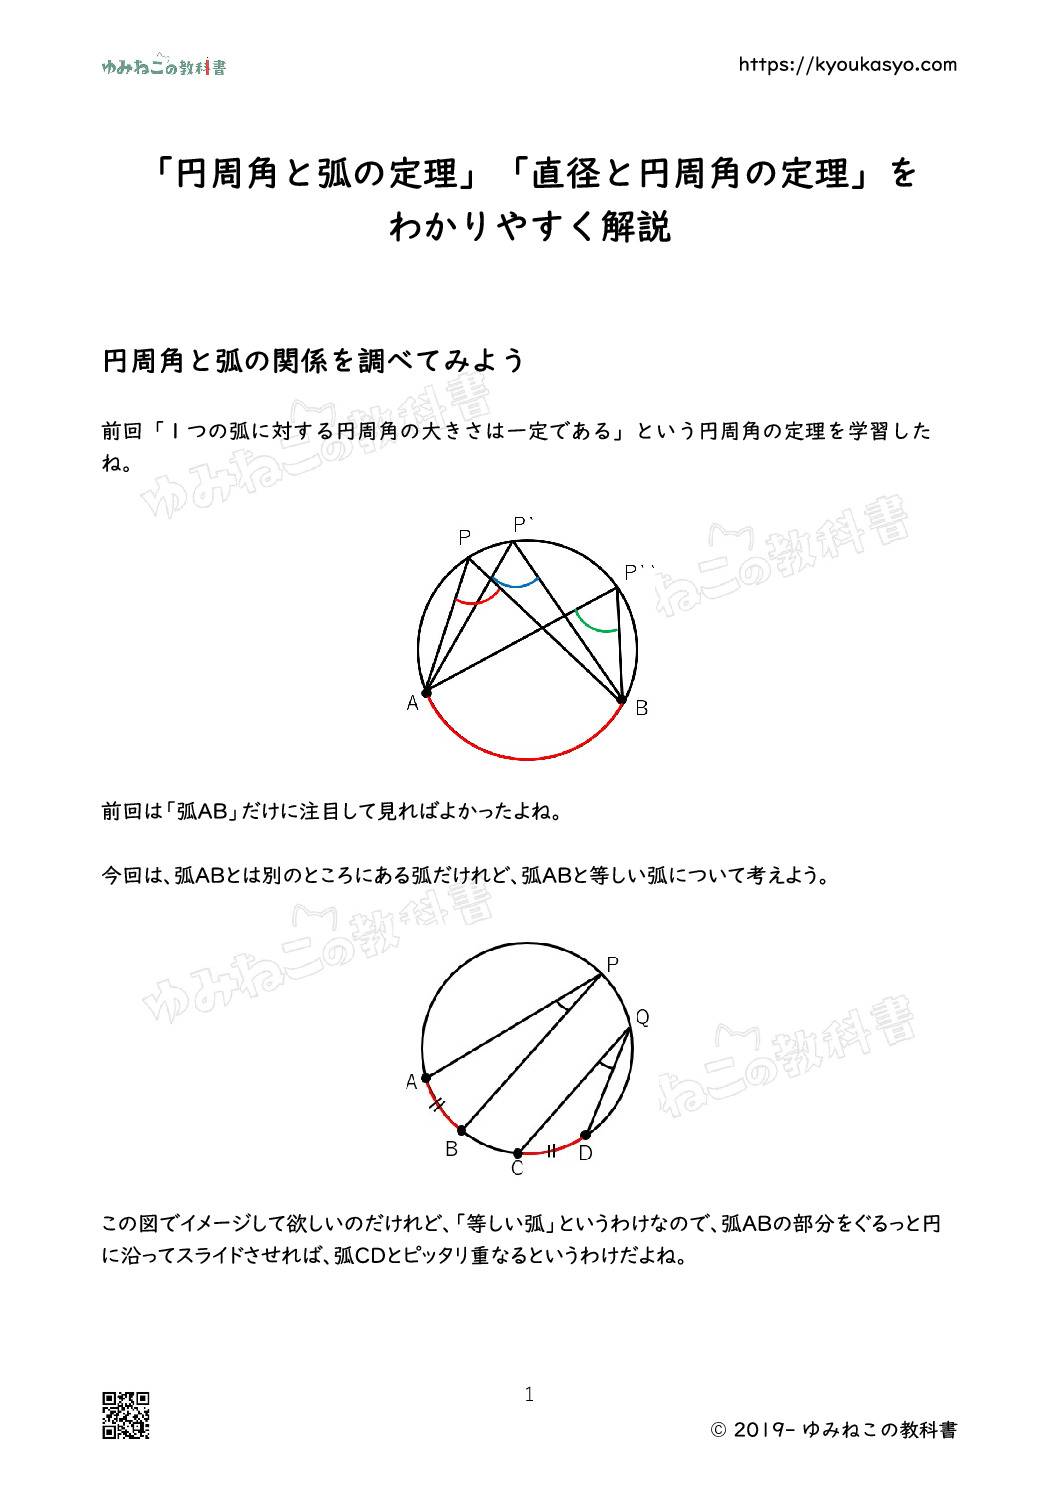 「円周角と弧の定理」「直径と円周角の定理」を わかりやすく解説